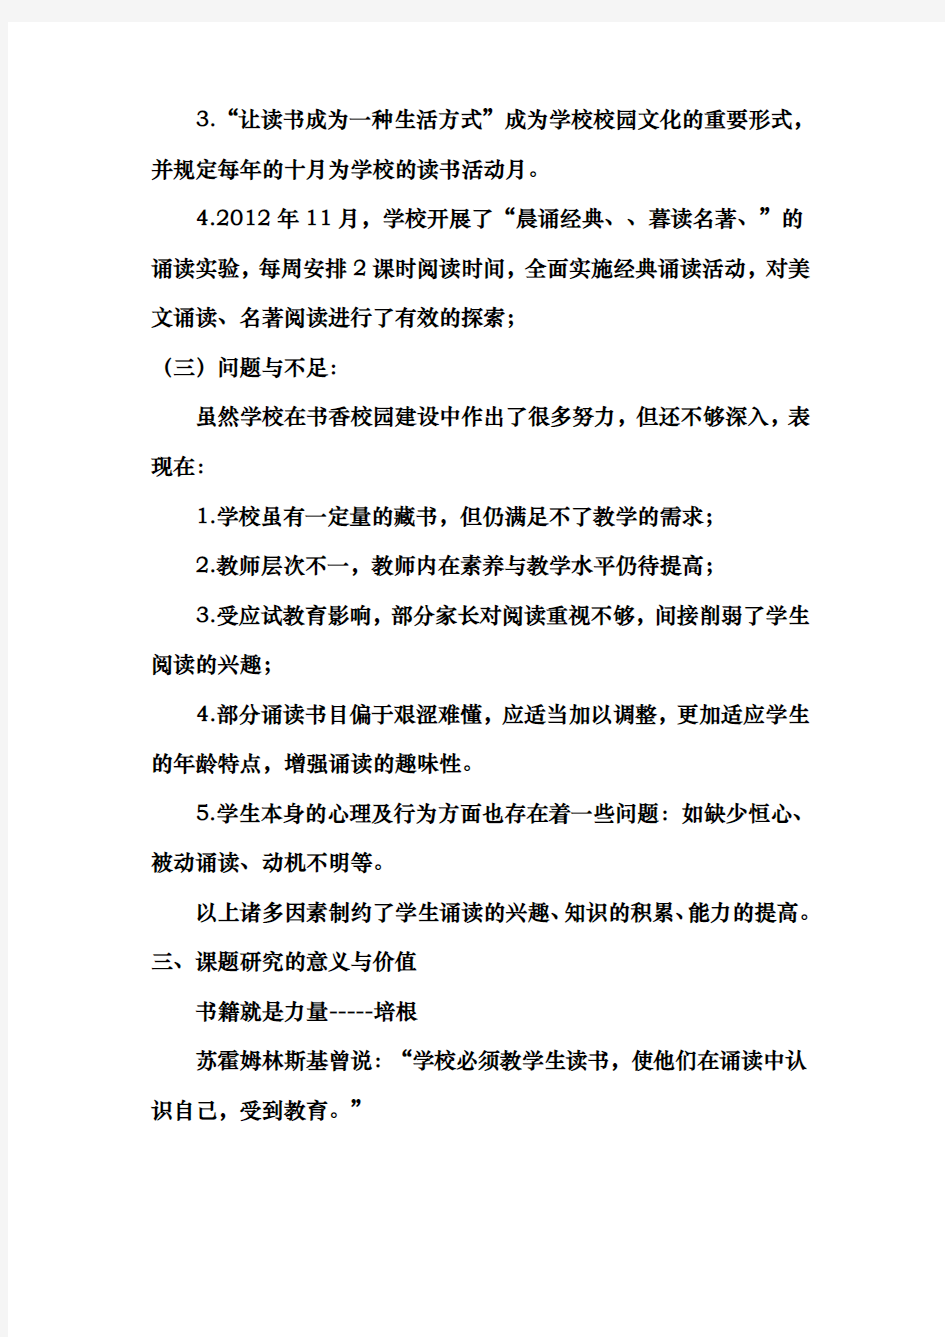 初中语文经典古诗文教学诵读教学策略实践课题分析报告